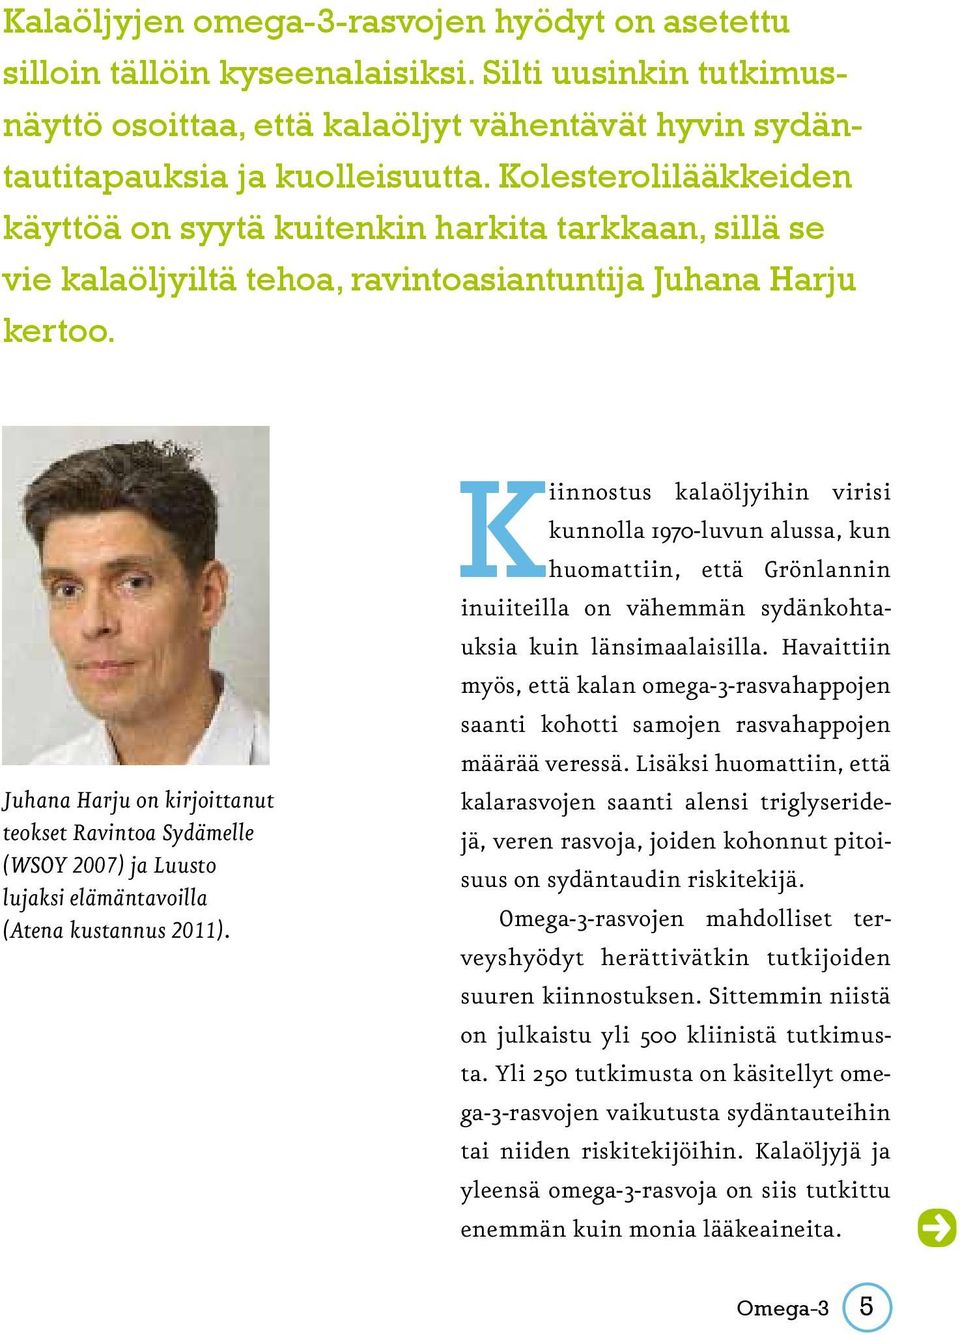 Juhana Harju on kirjoittanut teokset Ravintoa Sydämelle (WSOY 2007) ja Luusto lujaksi elämäntavoilla (Atena kustannus 2011).